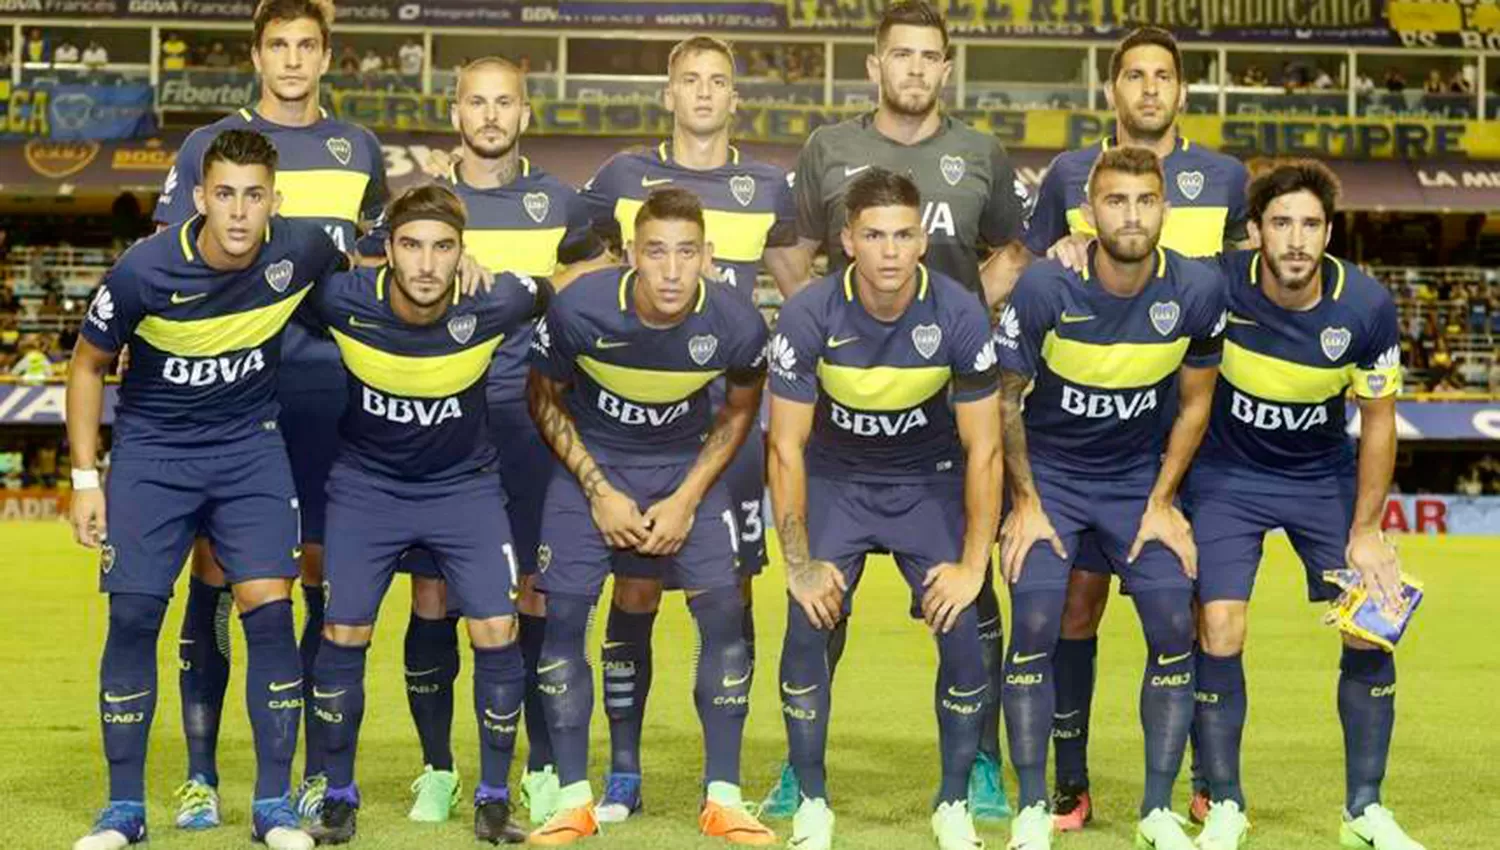 Boca llegó al título 66 y se convirtió en el equipo más ganador del fútbol argentino